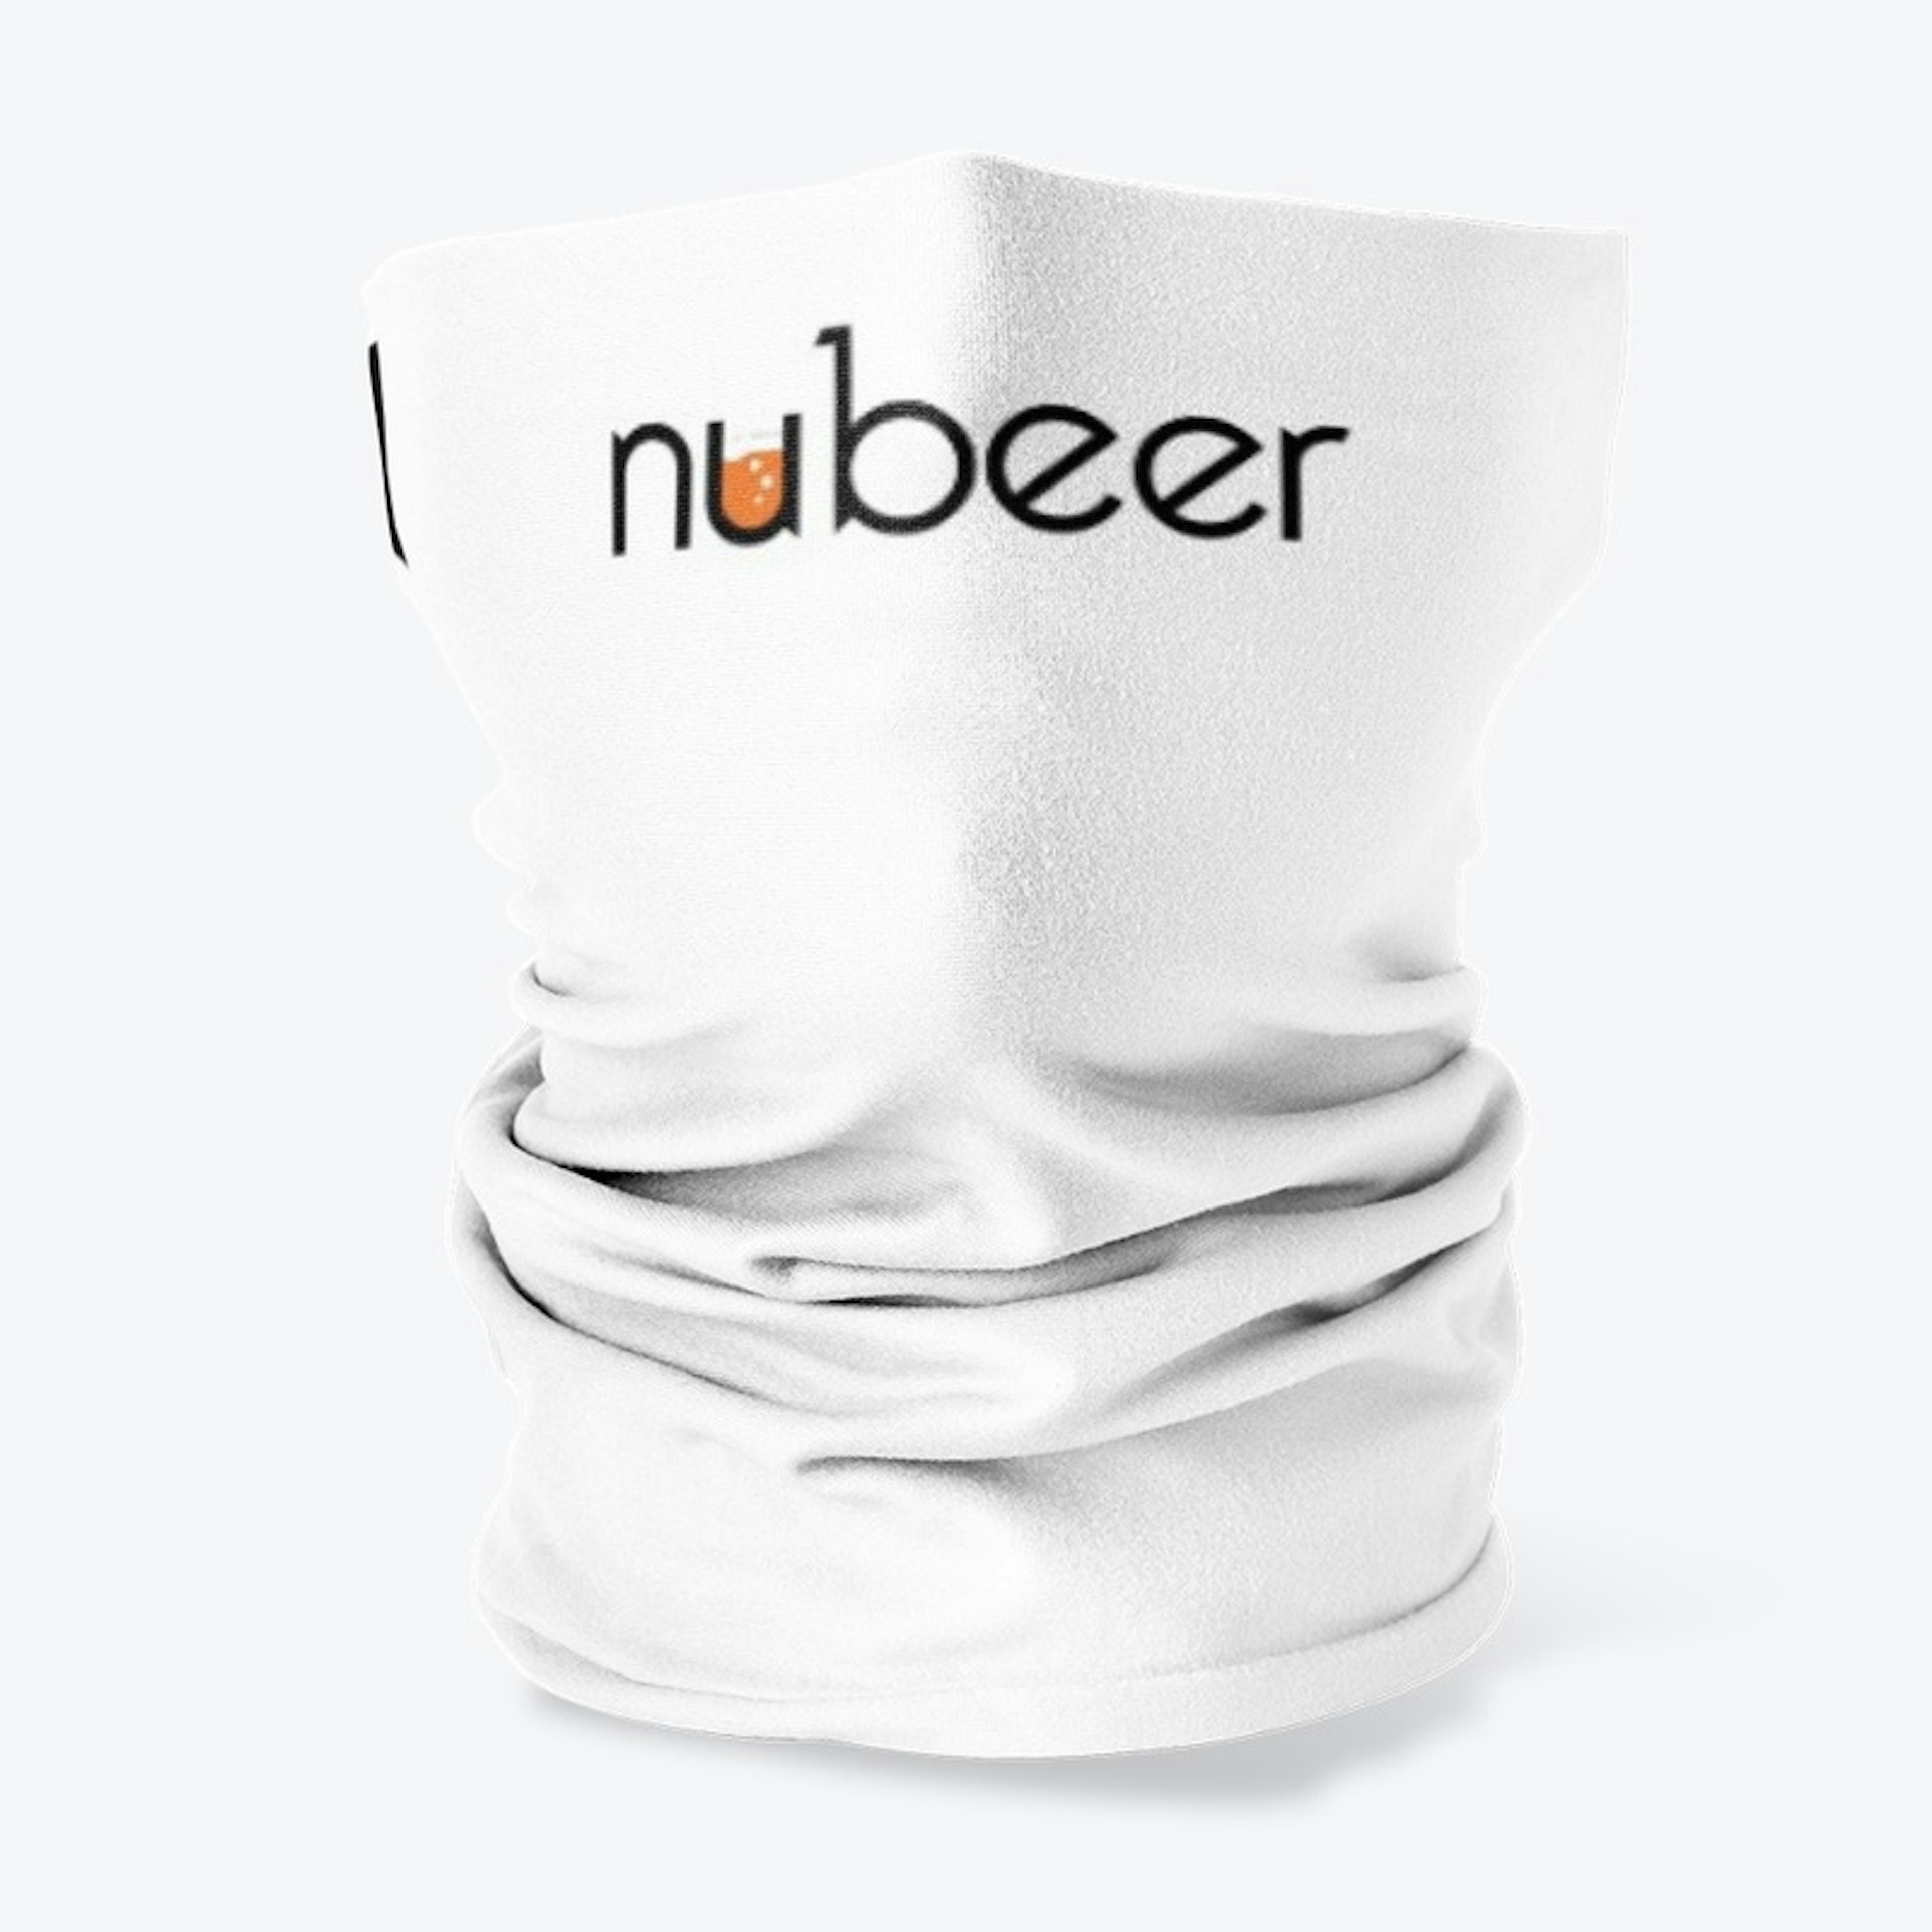 nubeer text logo